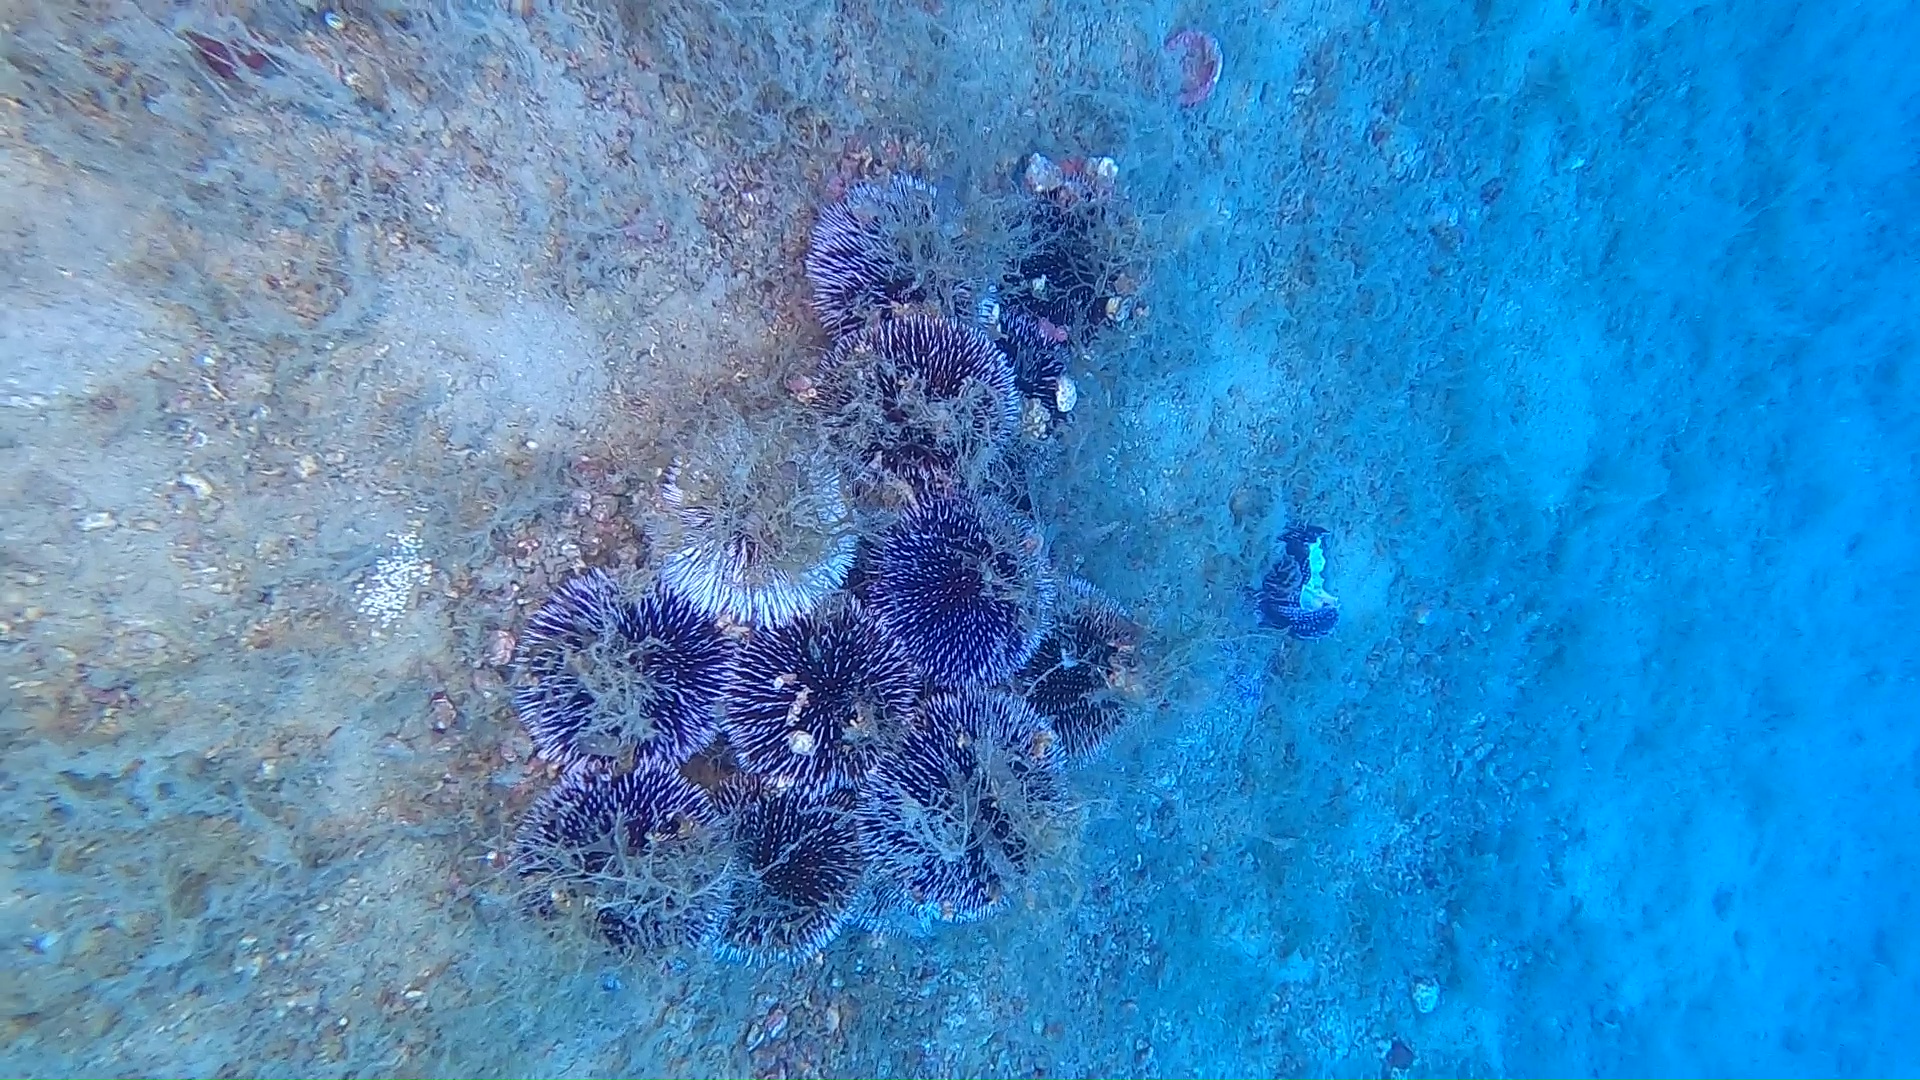 Riproduzione ricci di mare - Sea urchin reproduction - www.intotheblue.it